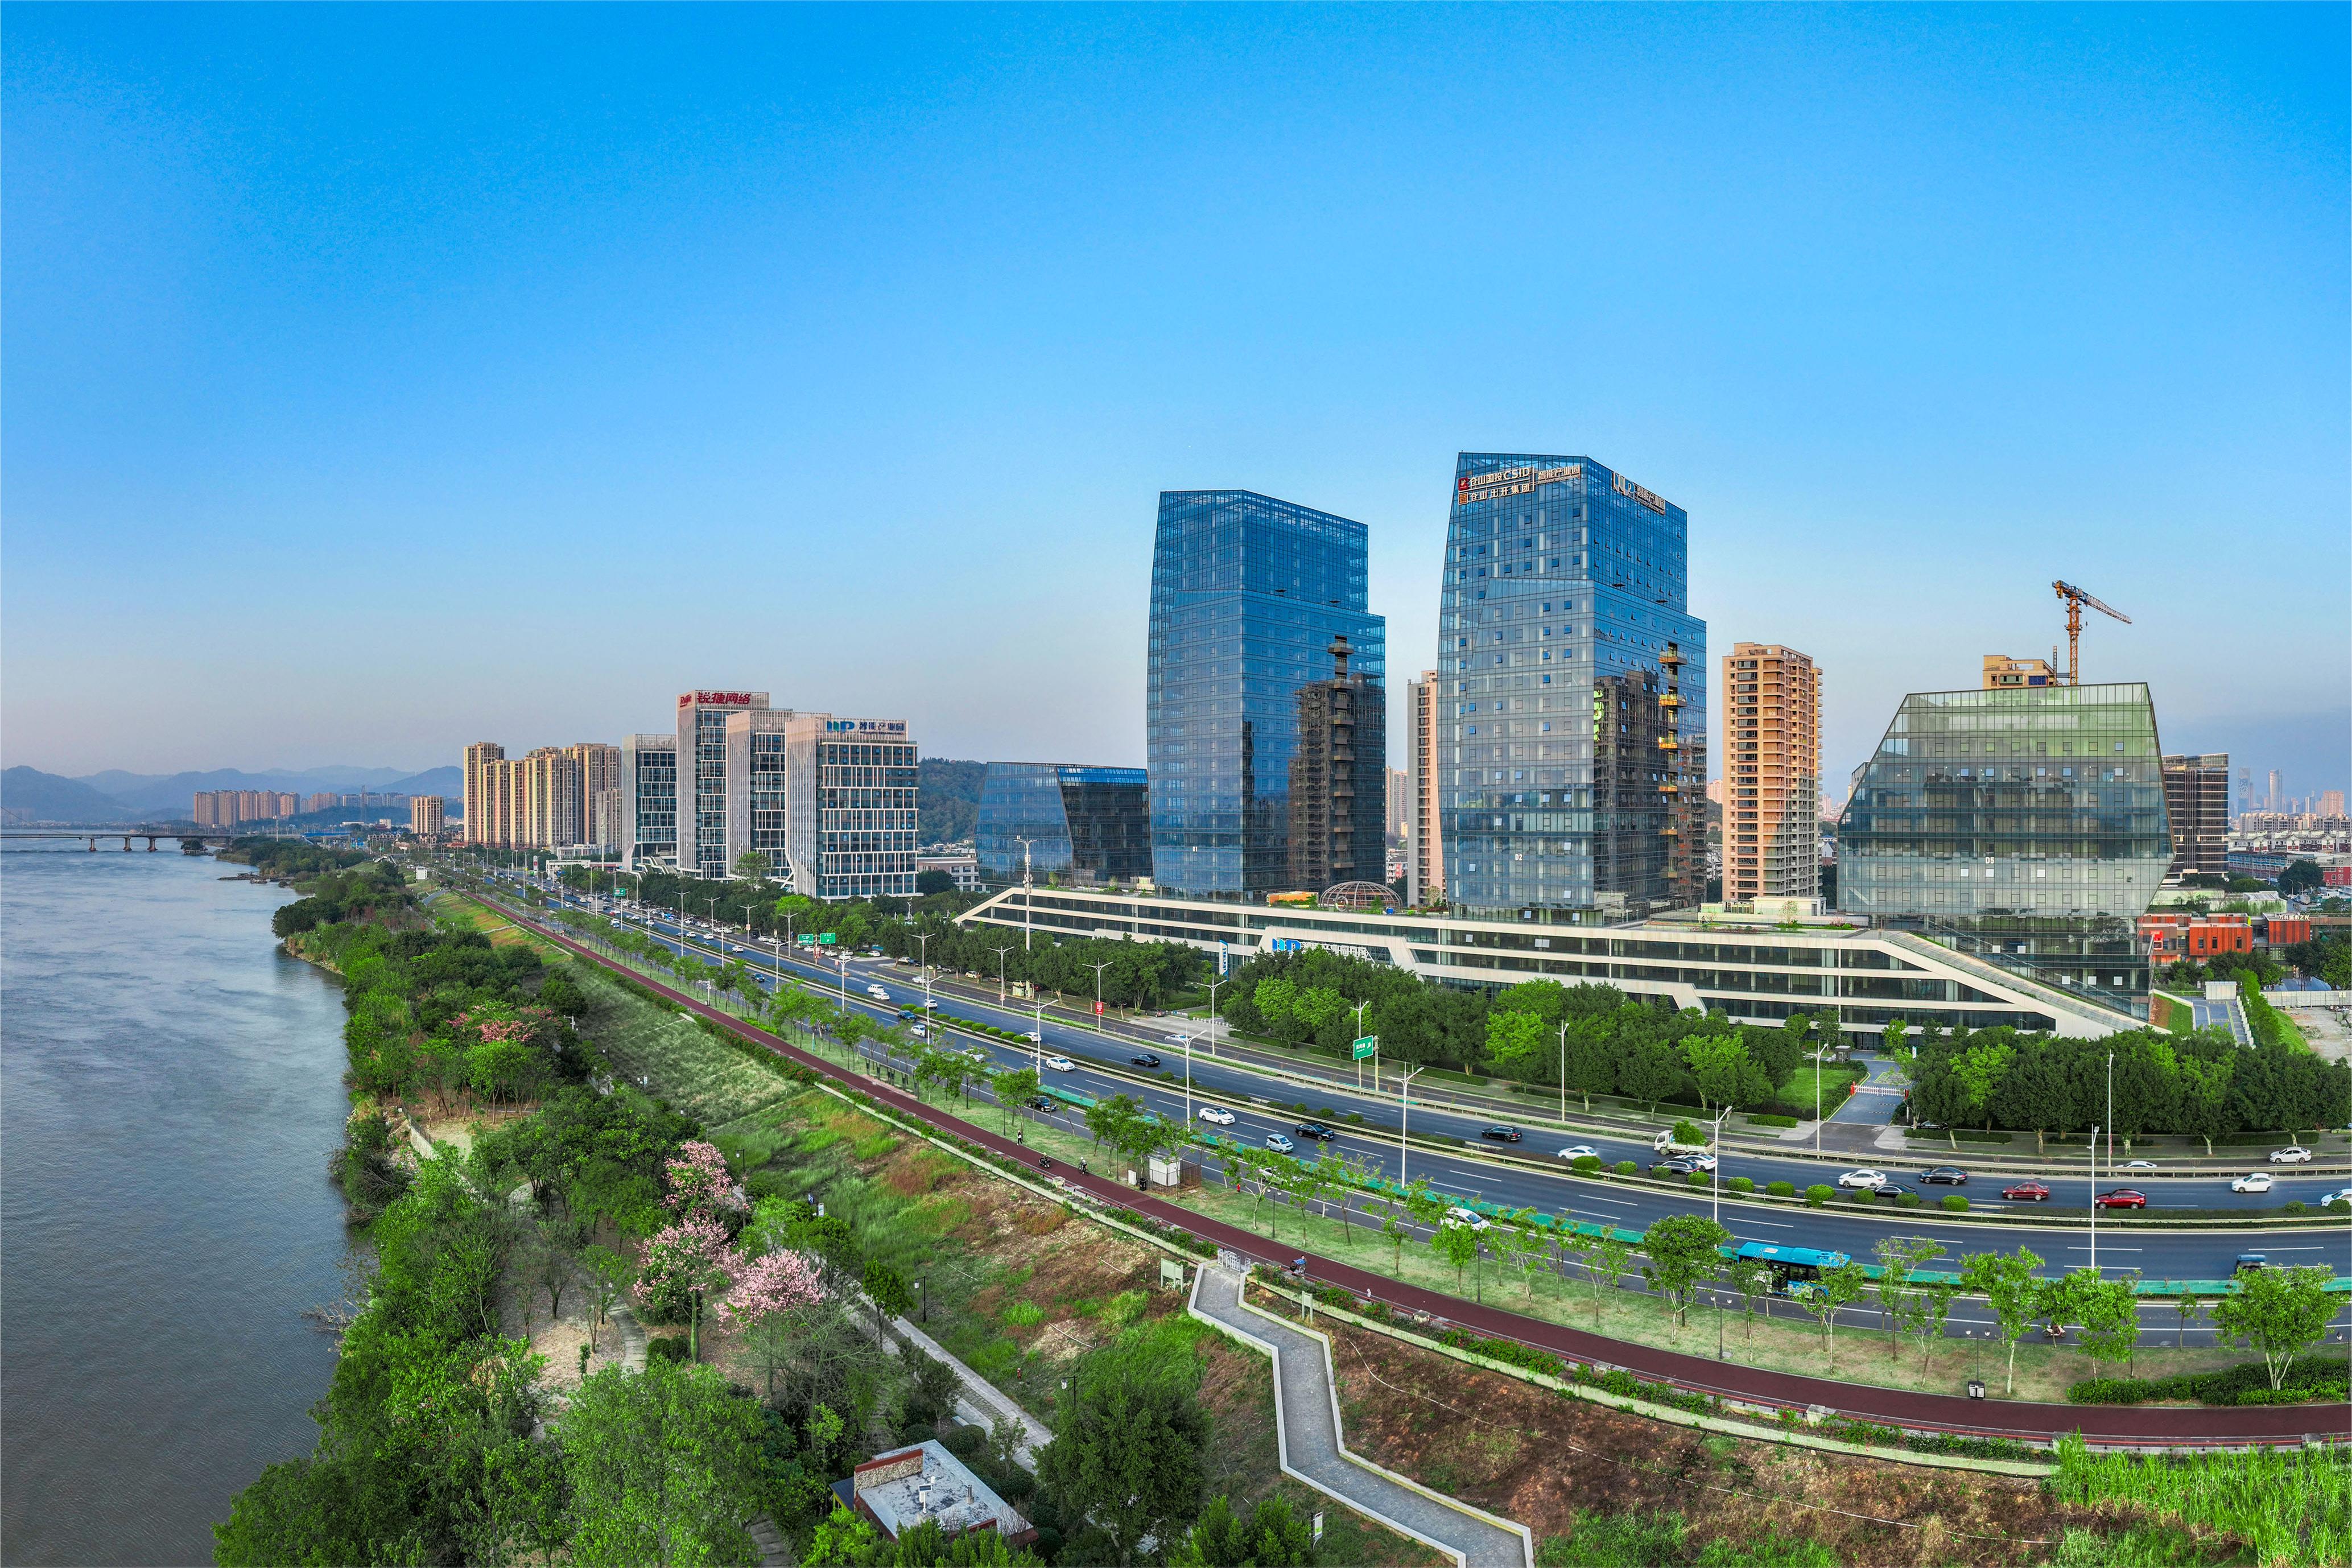 Seventh Digital China Summit kicks off in Fuzhou